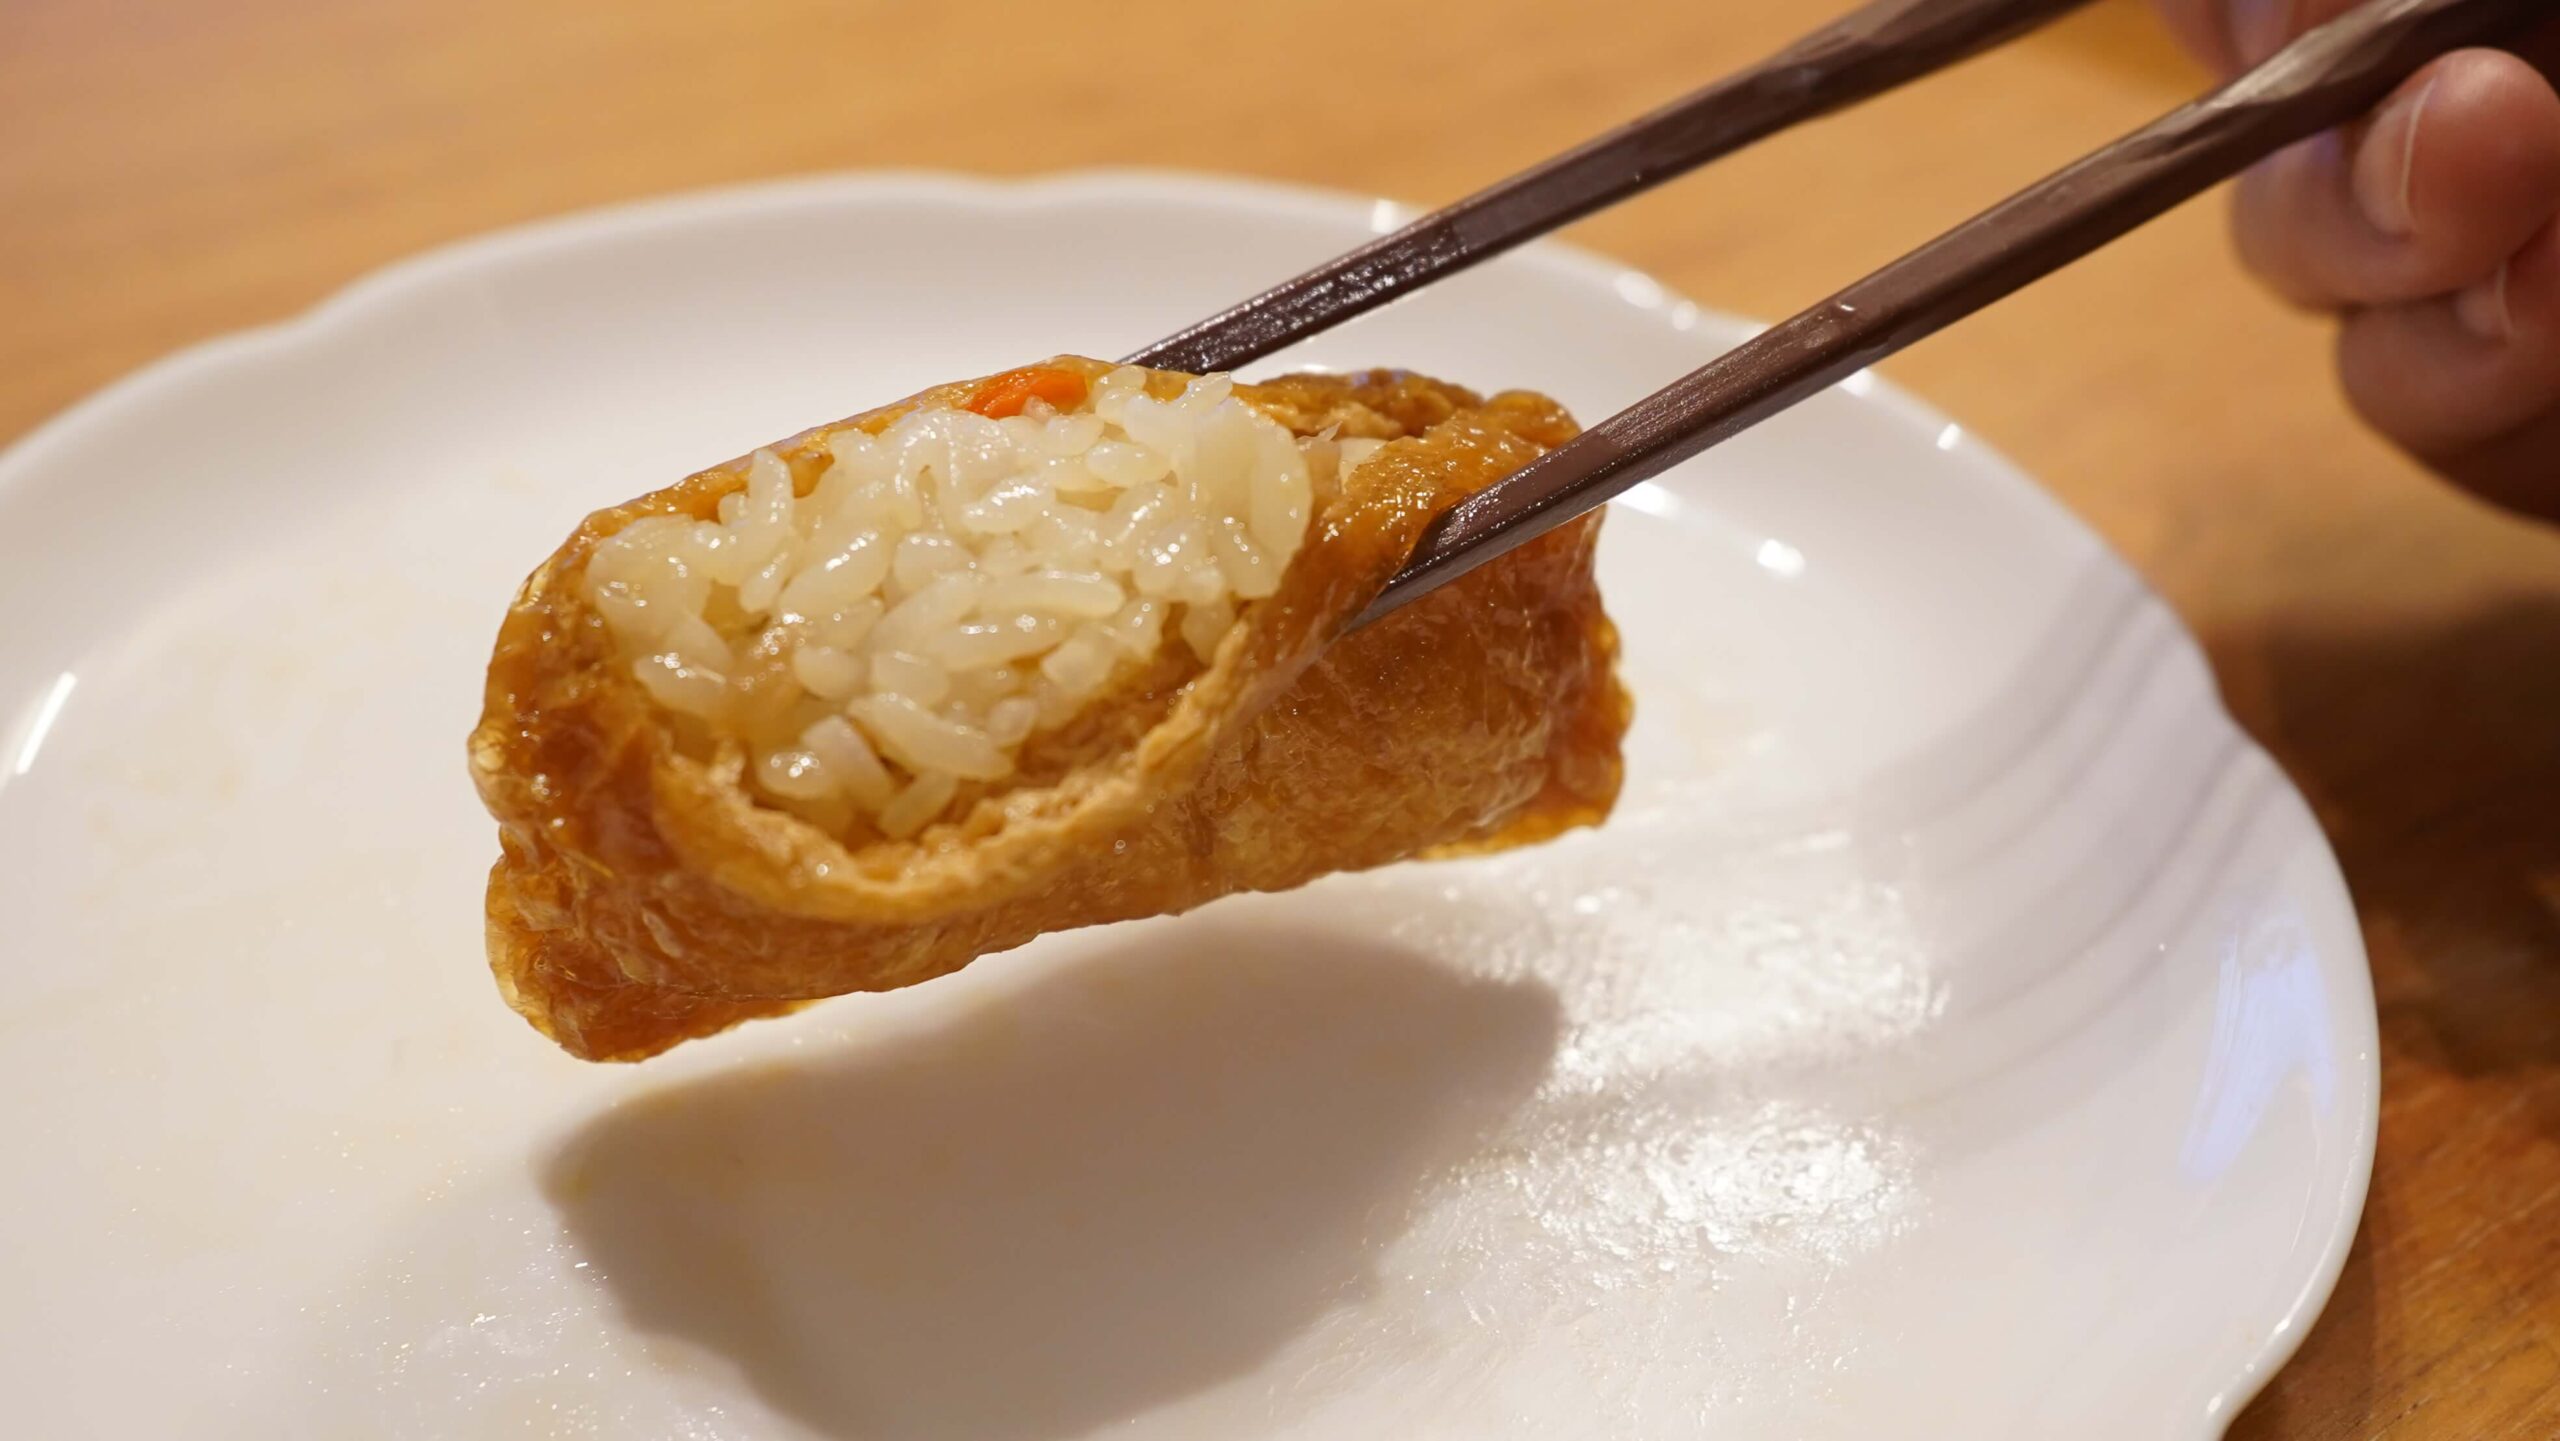 「ごはんの里」の冷凍食品「五目いなり寿司」を箸で持ち上げている写真